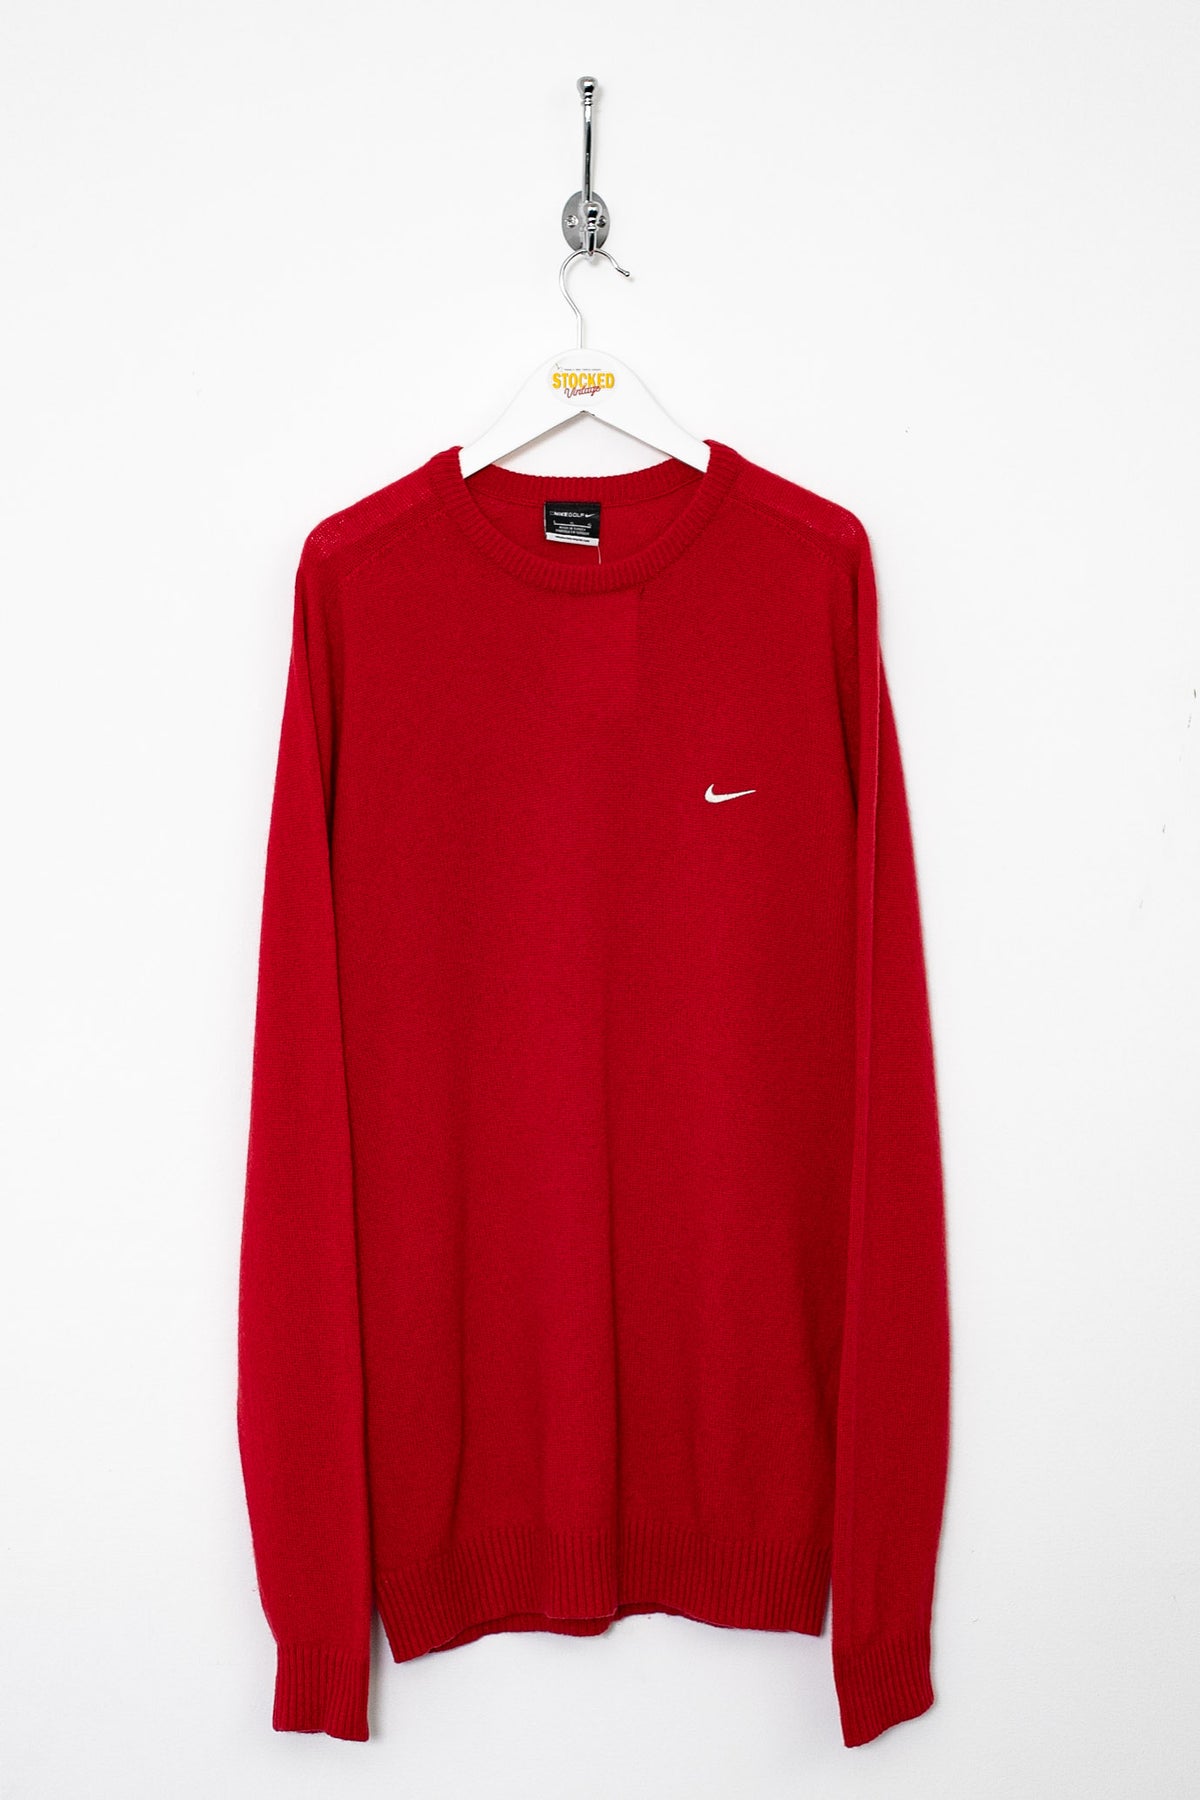 00s Nike Knit Jumper (L)